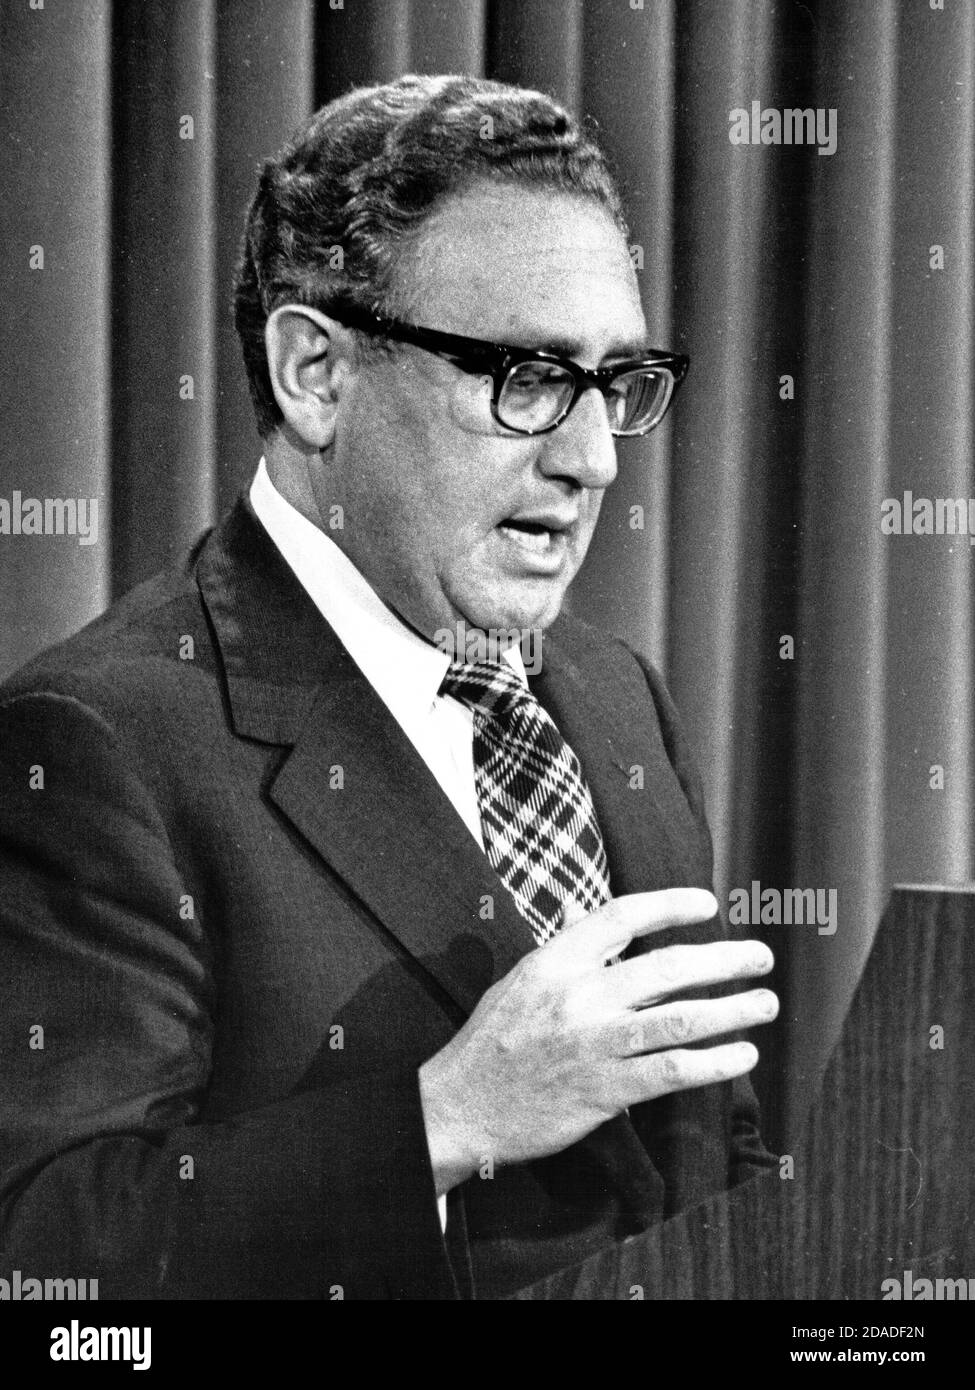 El Secretario de Estado de los Estados Unidos, Dr. Henry A. Kissinger, dirige una conferencia de prensa en la que anunció que la evacuación del personal de los Estados Unidos de Vietnam está completa y que la participación de los Estados Unidos en ese país había terminado, en el antiguo edificio de oficinas ejecutivas en Washington, DC el 29 de abril de 1975. Kissinger retrasó su anuncio hasta que el último americano fue sacado por aire de Saigón. El Secretario reiteró que los EE.UU. Respetarán todos sus compromisos en todo el mundo.crédito: Benjamin E. 'Gene' Forte / CNP / MediaPunch Foto de stock